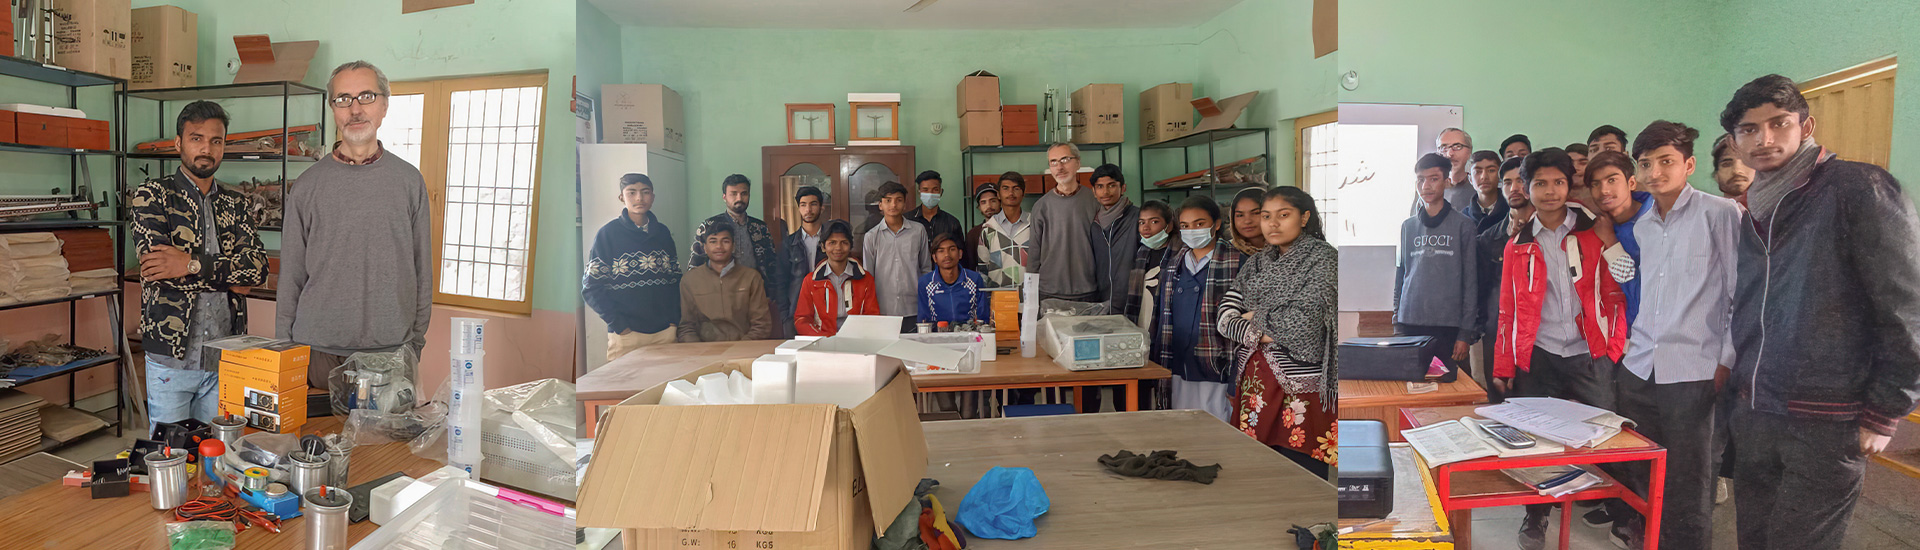 Don Bosco Lahore (Pakistán) promueve la integración y la mejora de la educación con el proyecto científico ‘Physlab’